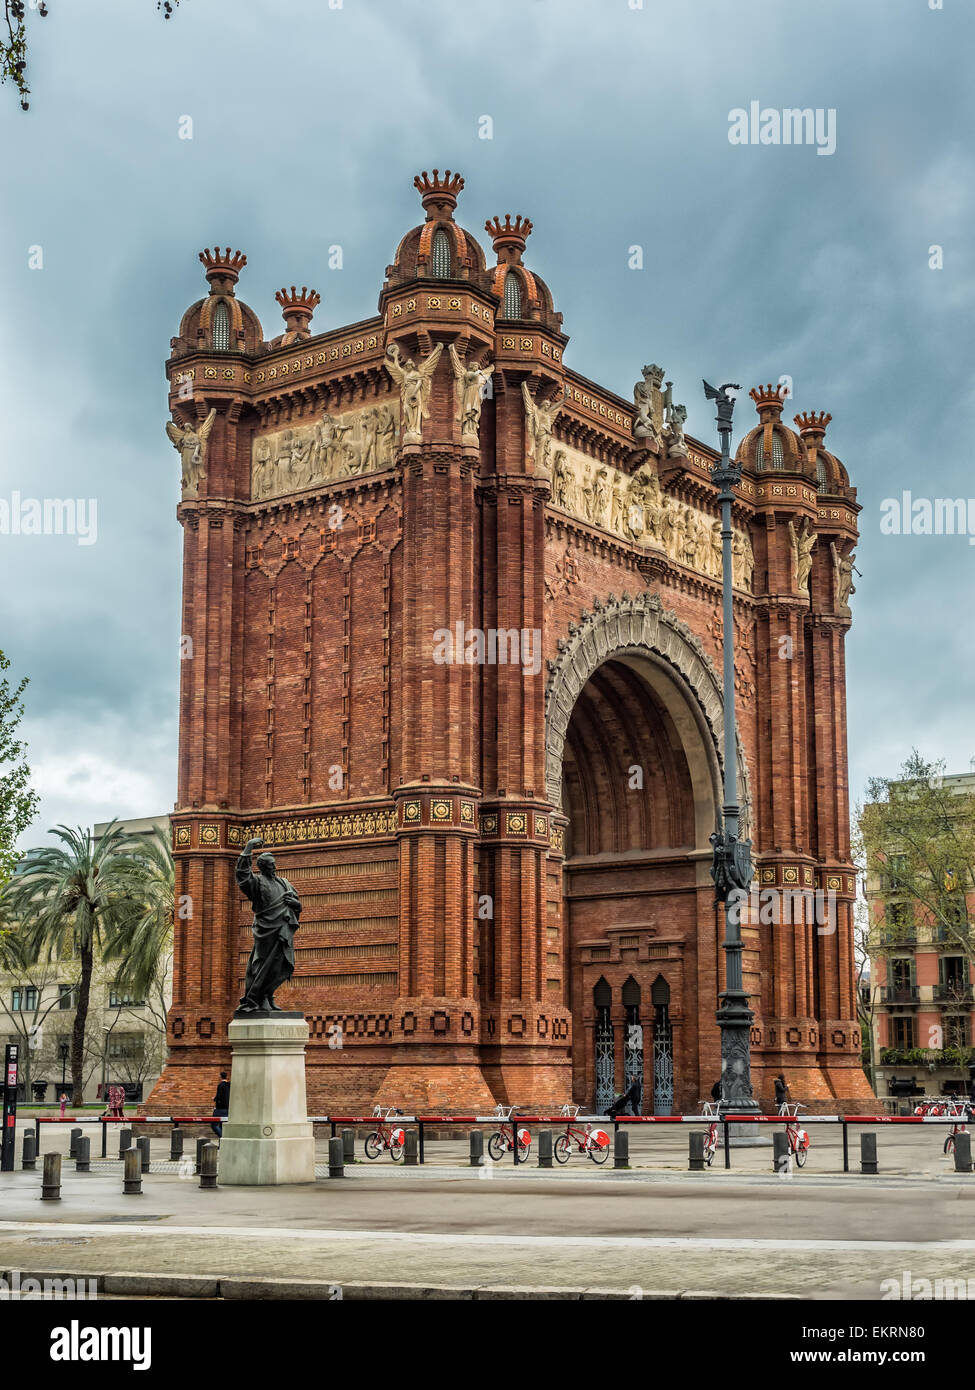 Arco del Triunfo Barcelona Triumph Arch, Spain Stock Photo